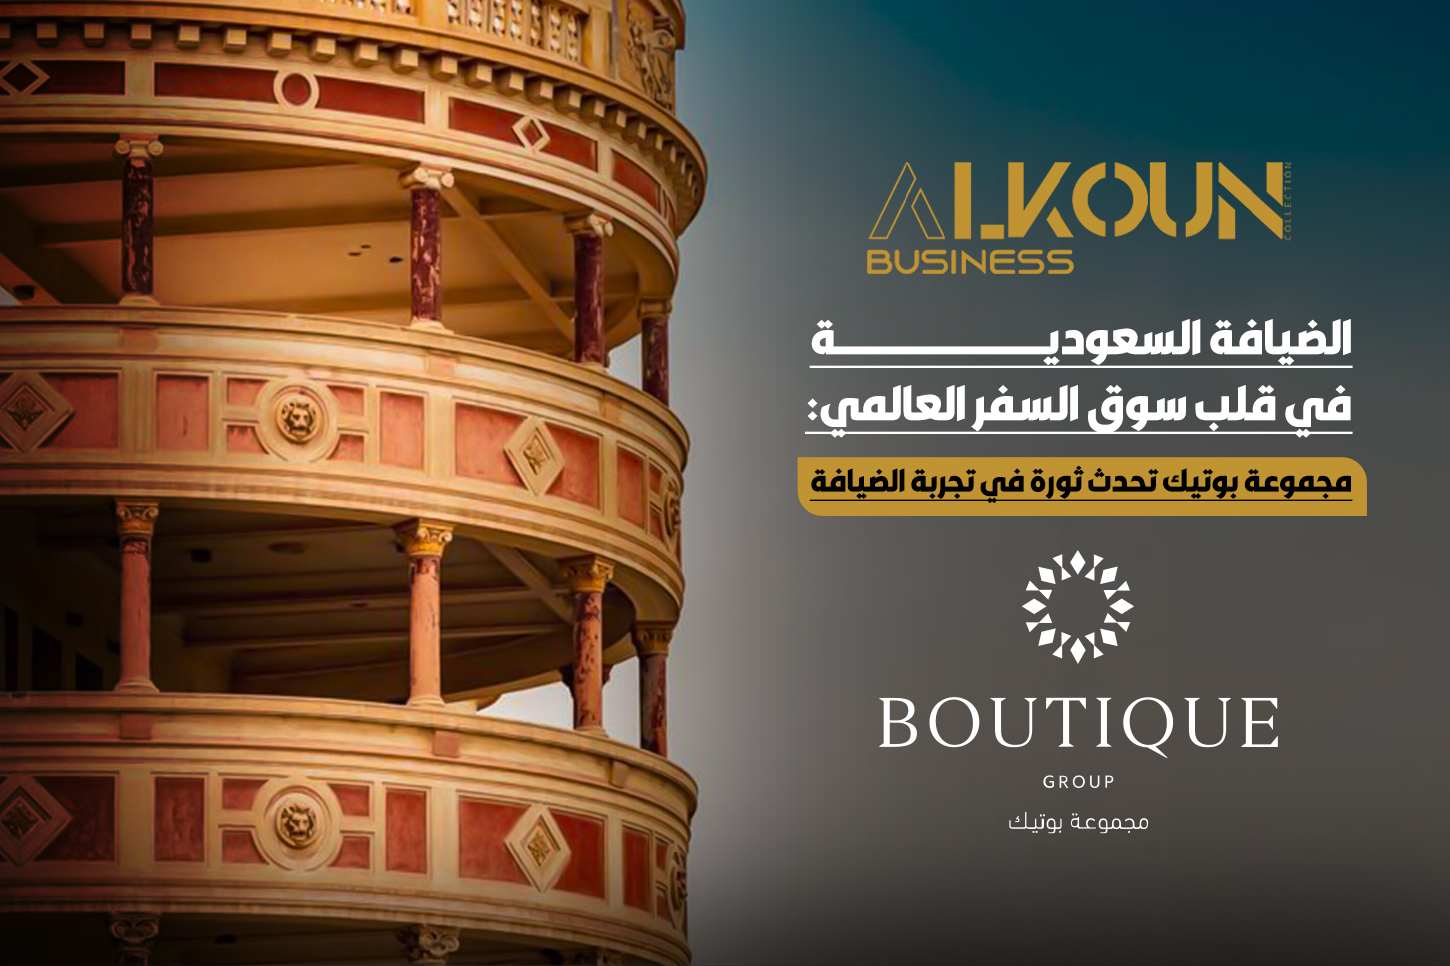 الضيافة السعودية في قلب سوق السفر العالمي: مجموعة بوتيك تحدث ثورة في تجربة الضيافة